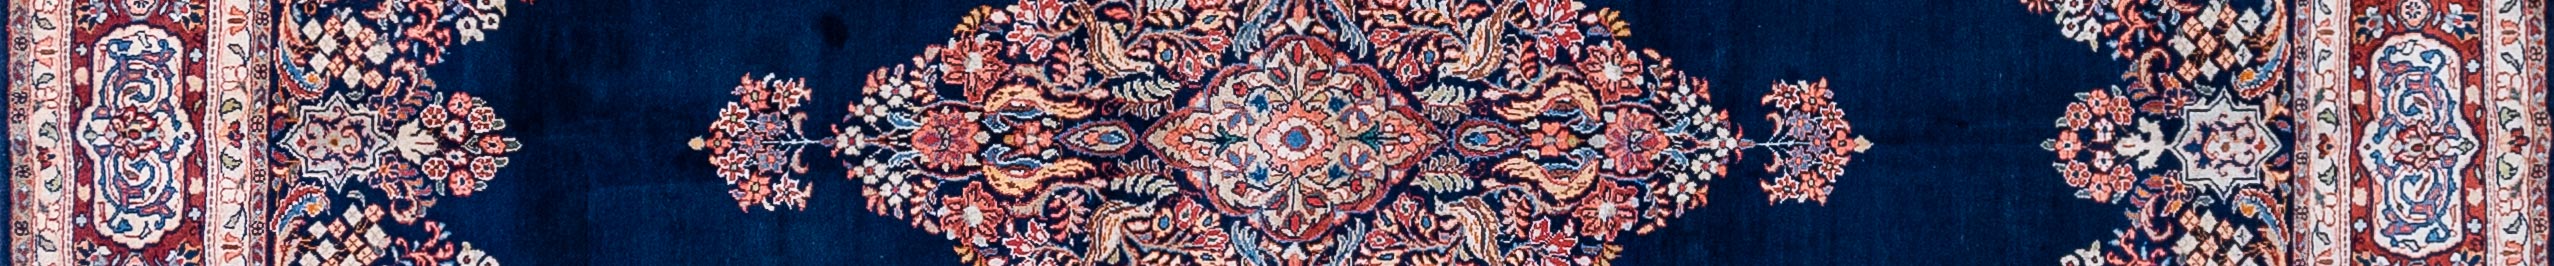 Sarouq Persian Carpet Rug N1Carpet Canada Montreal Tapis Persan 3950